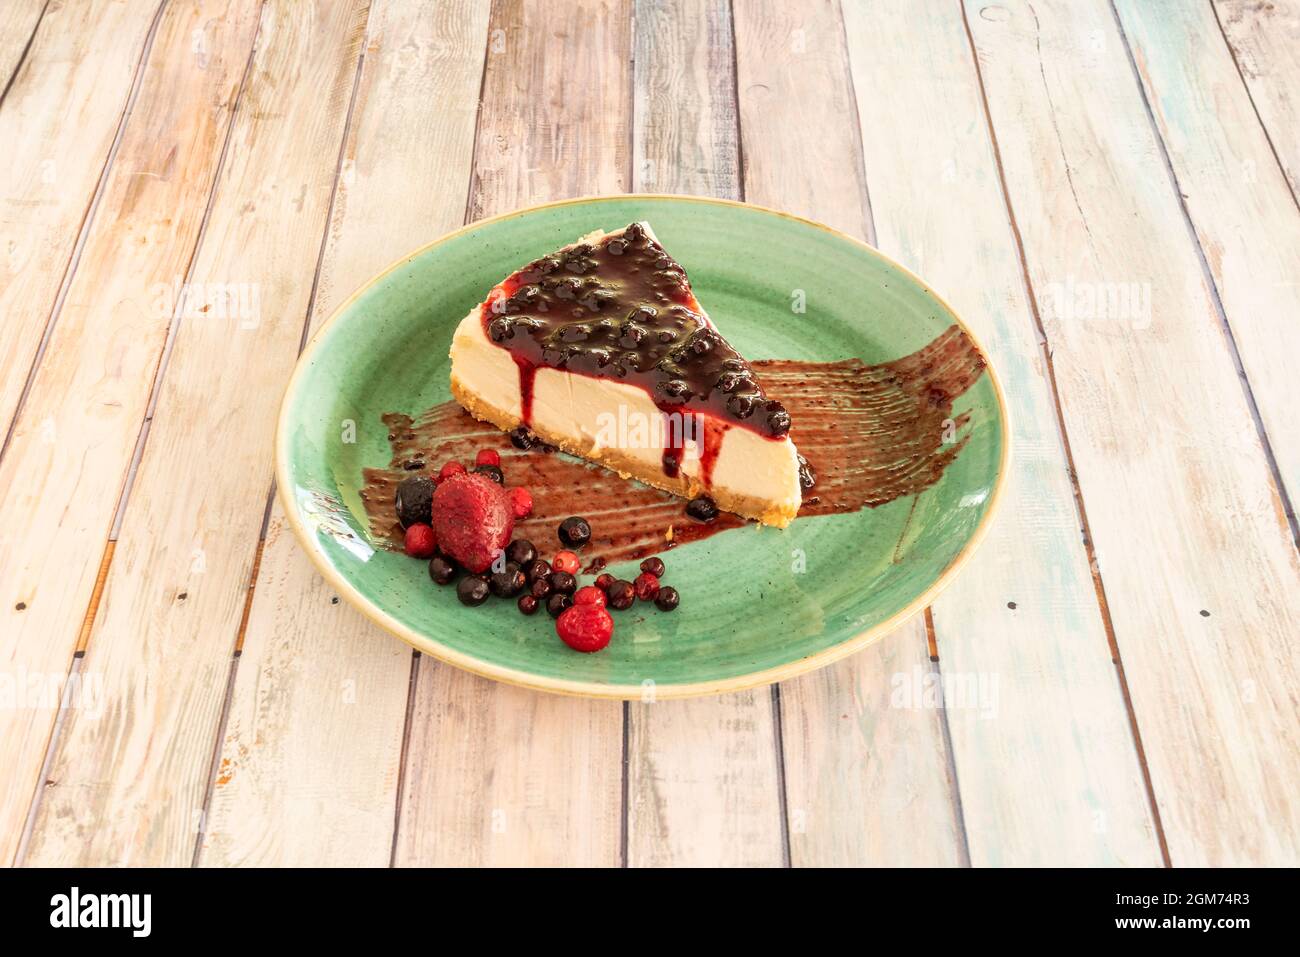 Increíble presentación de tarta de queso con mermelada de bayas rojas y bayas con fresas en el plato verde Foto de stock